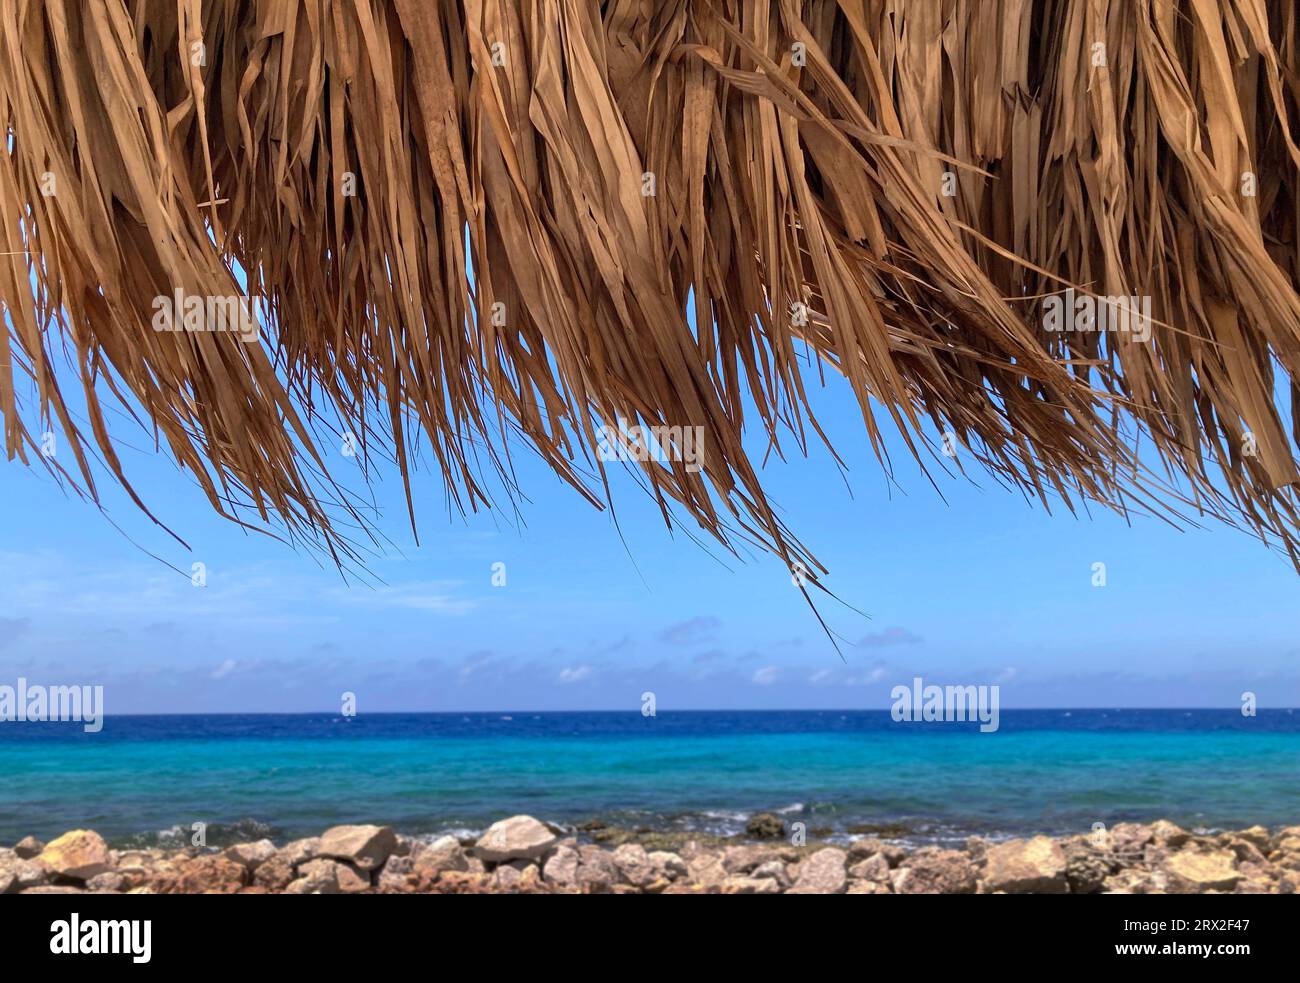 Fronde di palme con tetto di paglia che soffiano nella brezza con il mare caraibico, Curacao Foto Stock